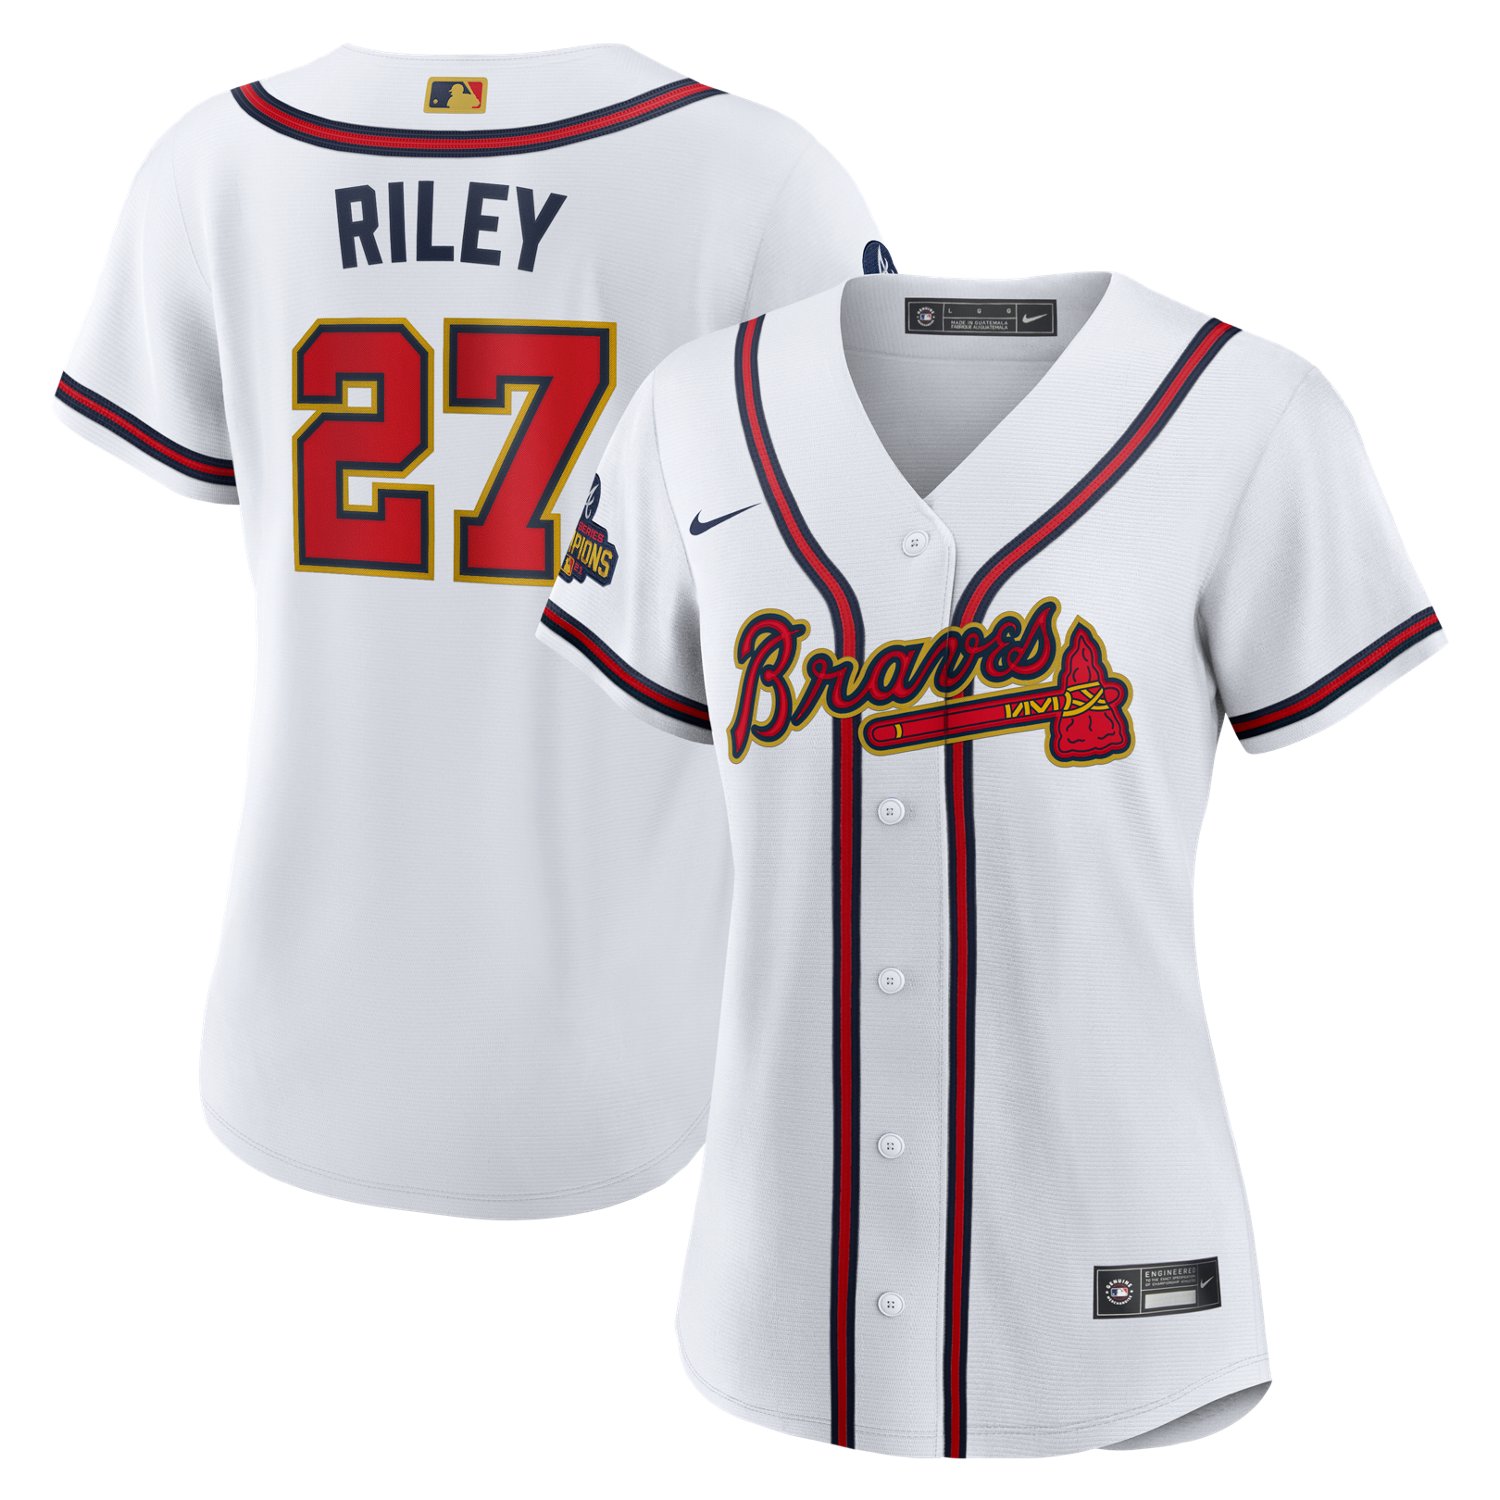 Austin Riley Atlanta Braves Women's Navy Backer Slim Fit T-Shirt 